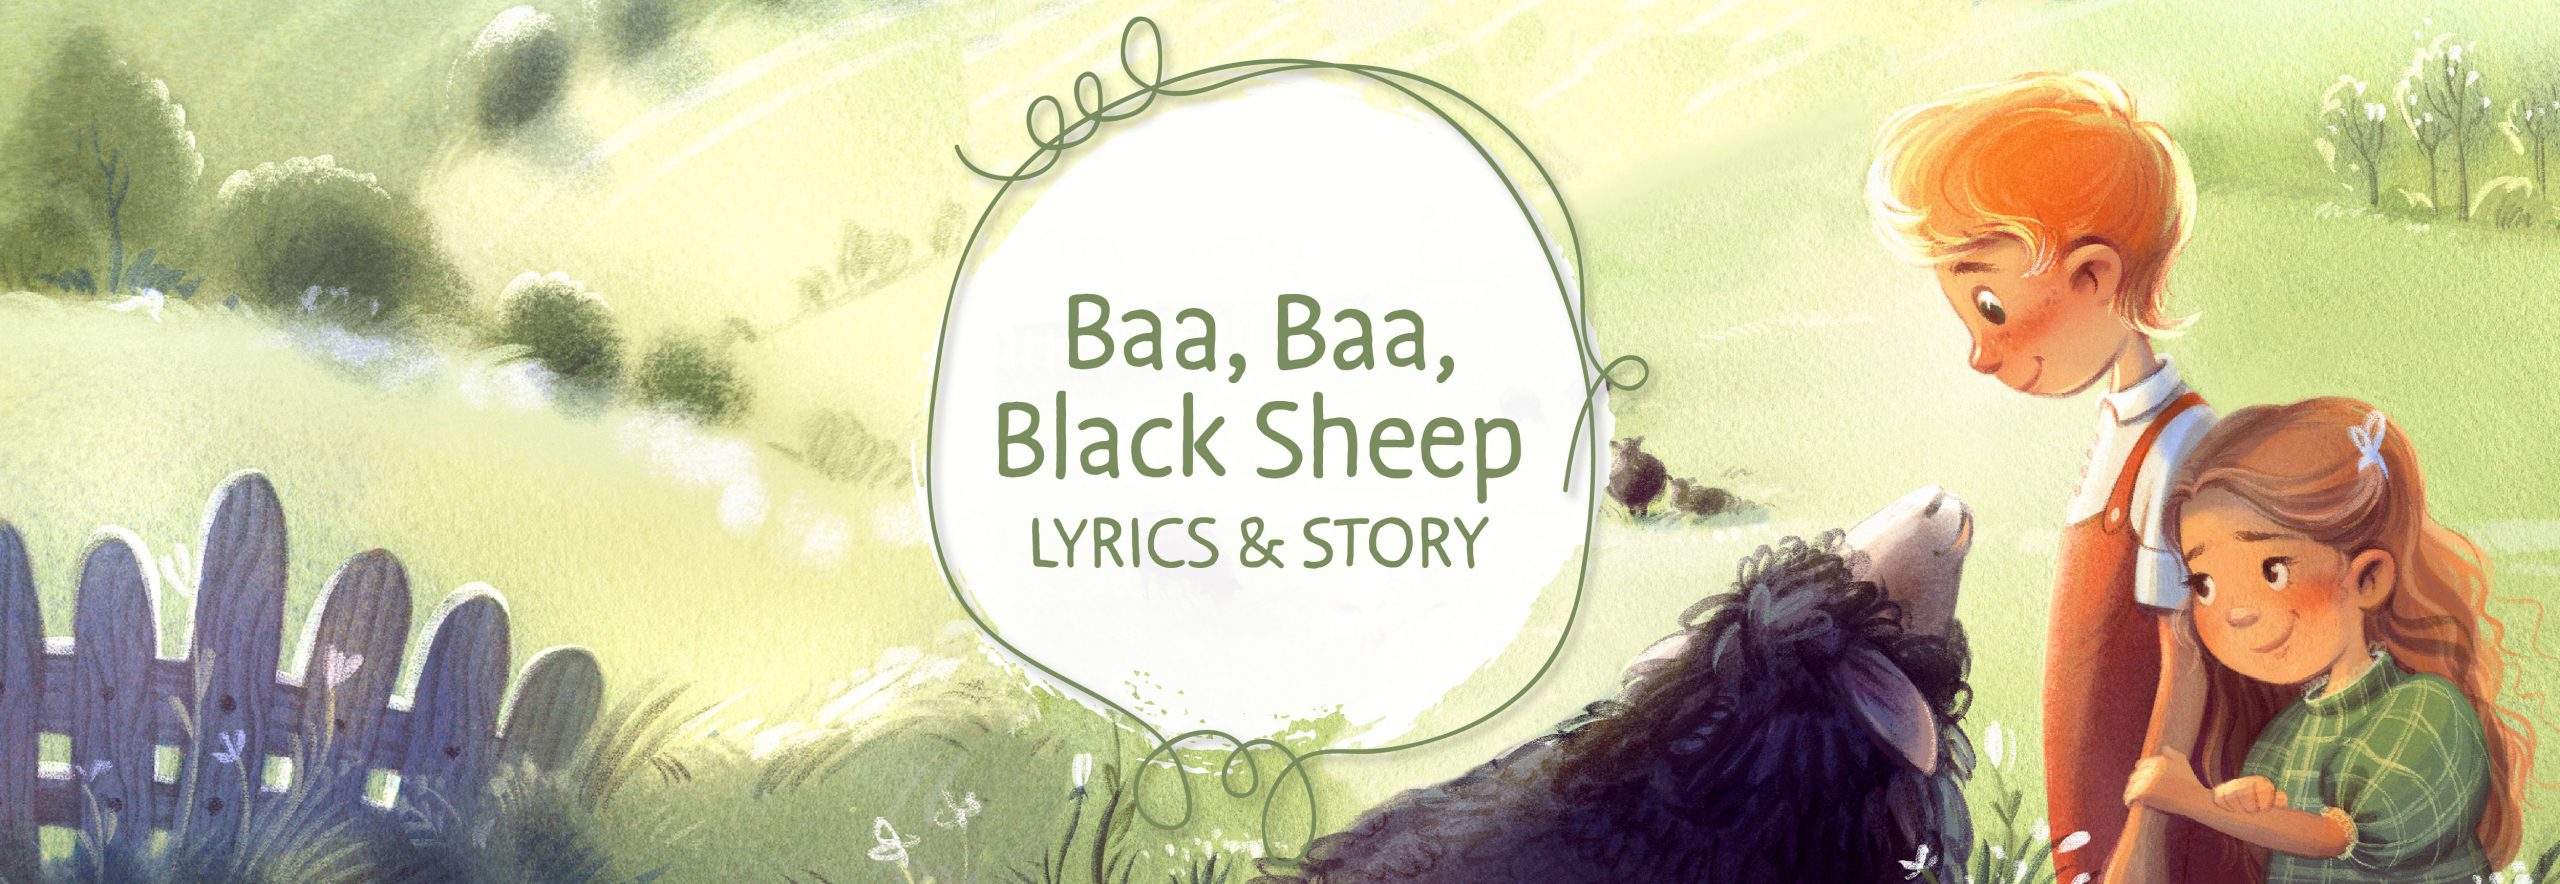 Nursery Rhyme Songs: Baa, Baa, Black Sheep - The Good and the Beautiful